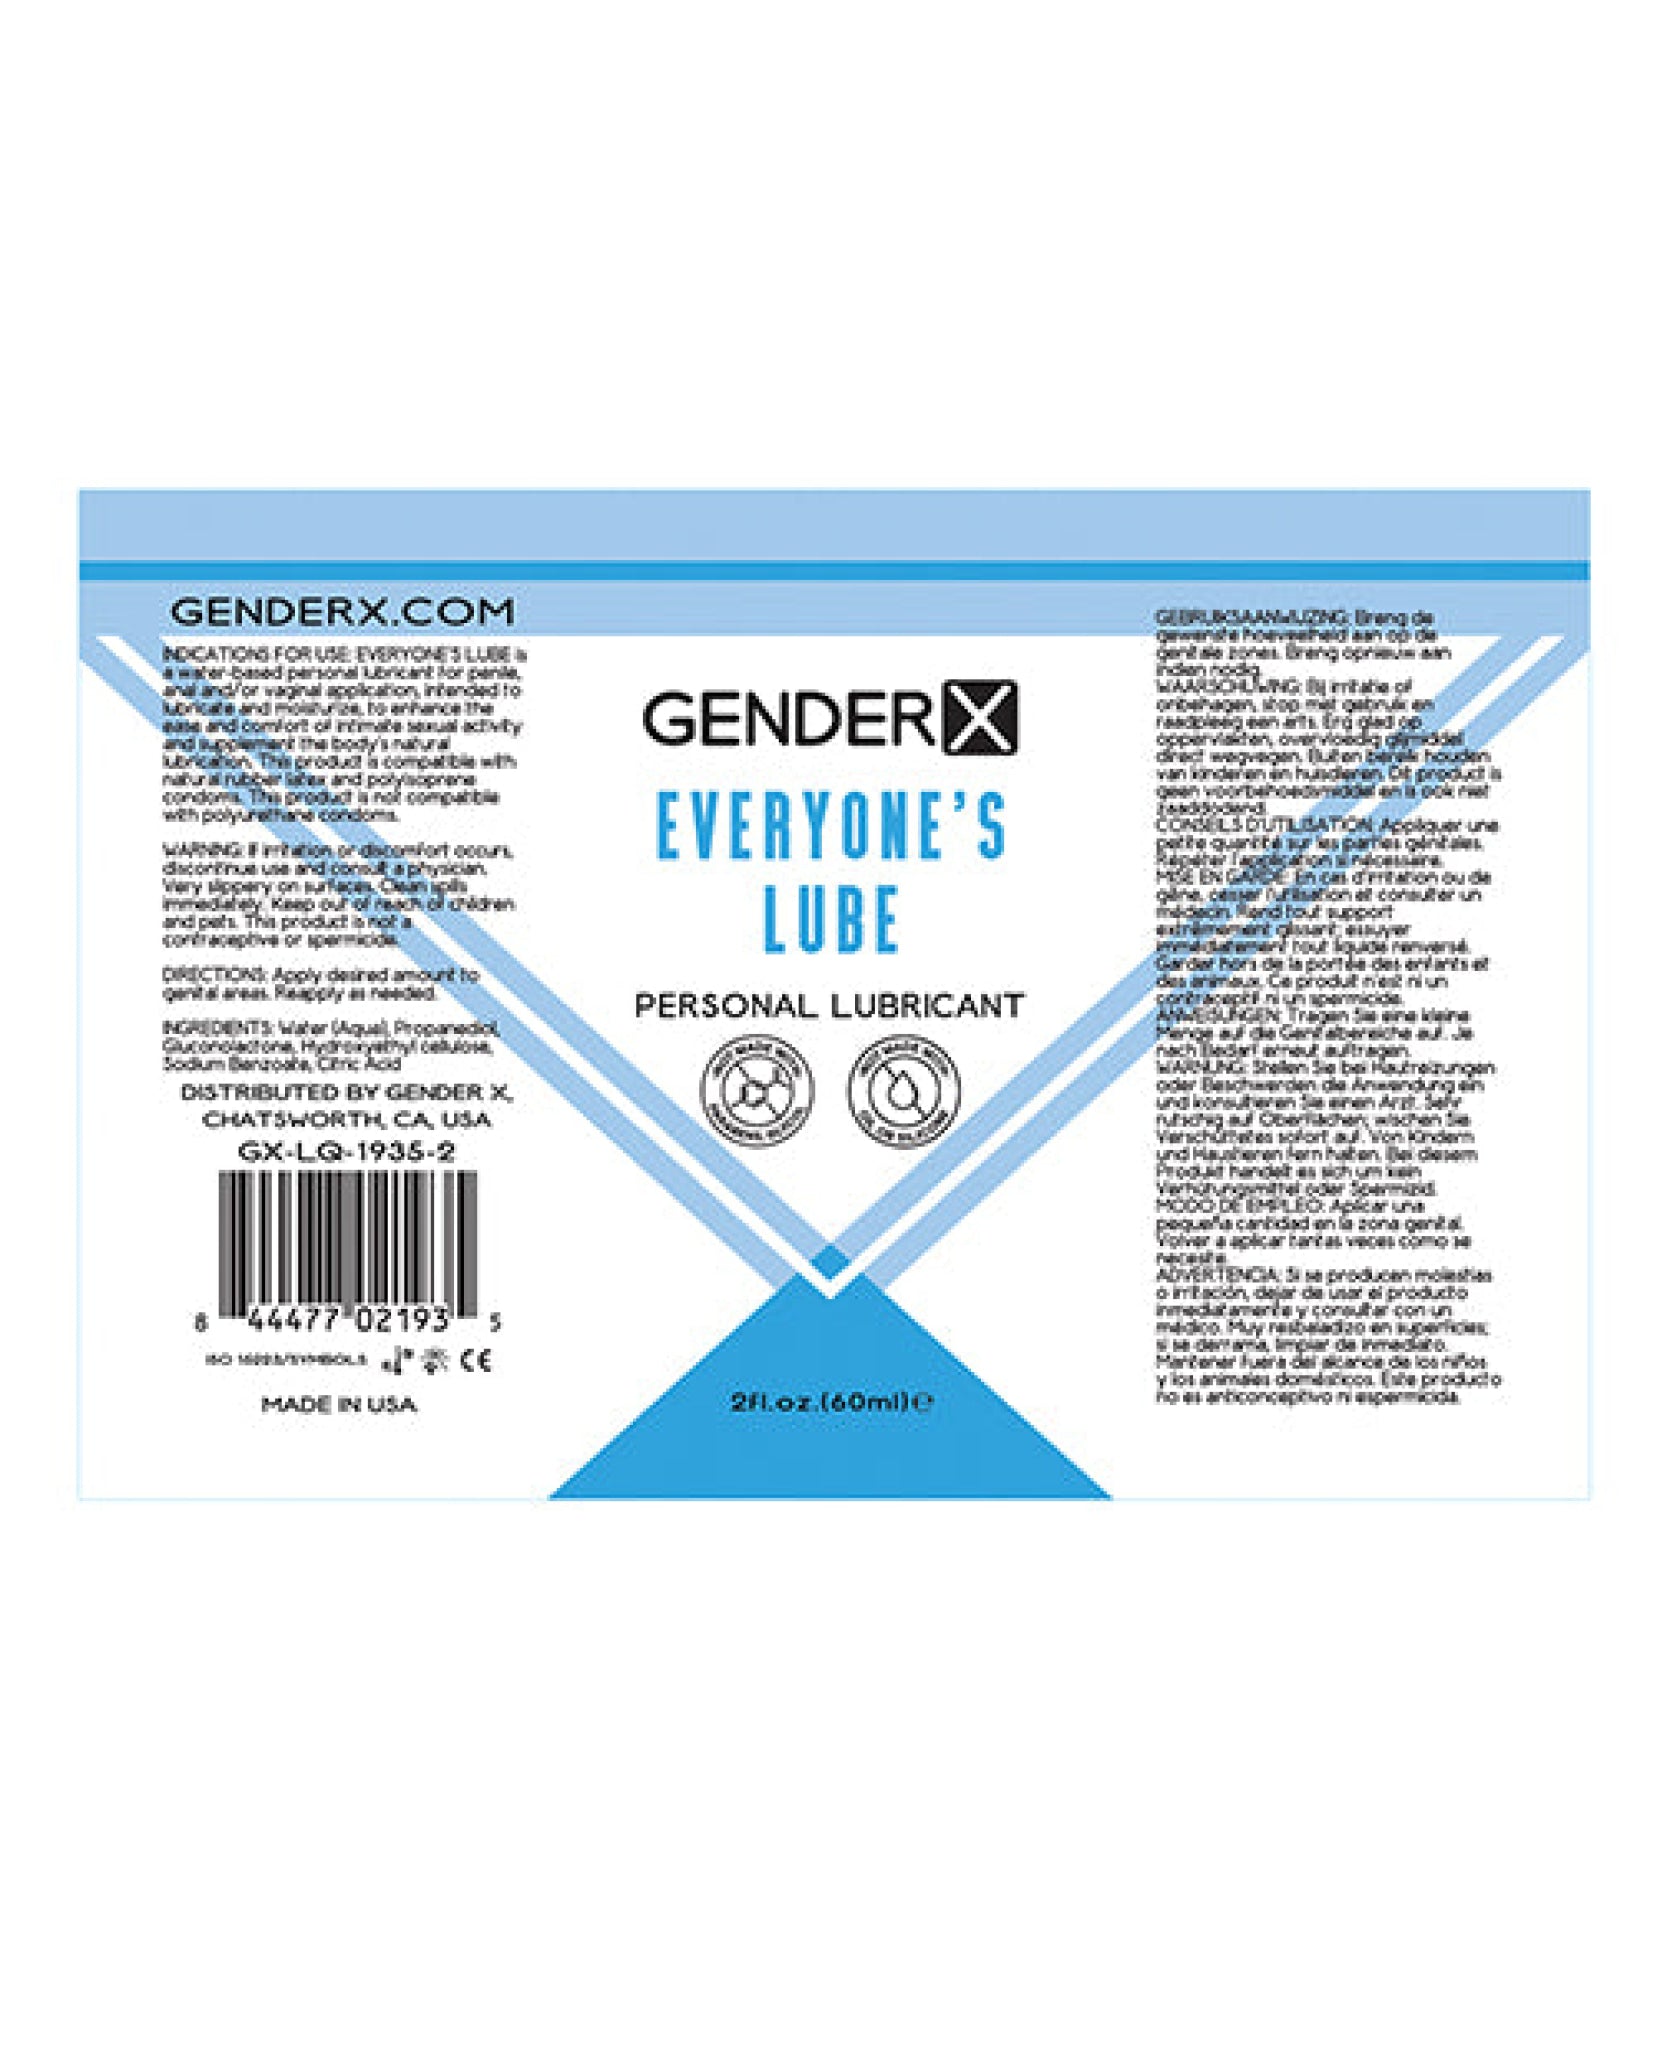 Gender X Flavored Lube - Everyone's Gender X